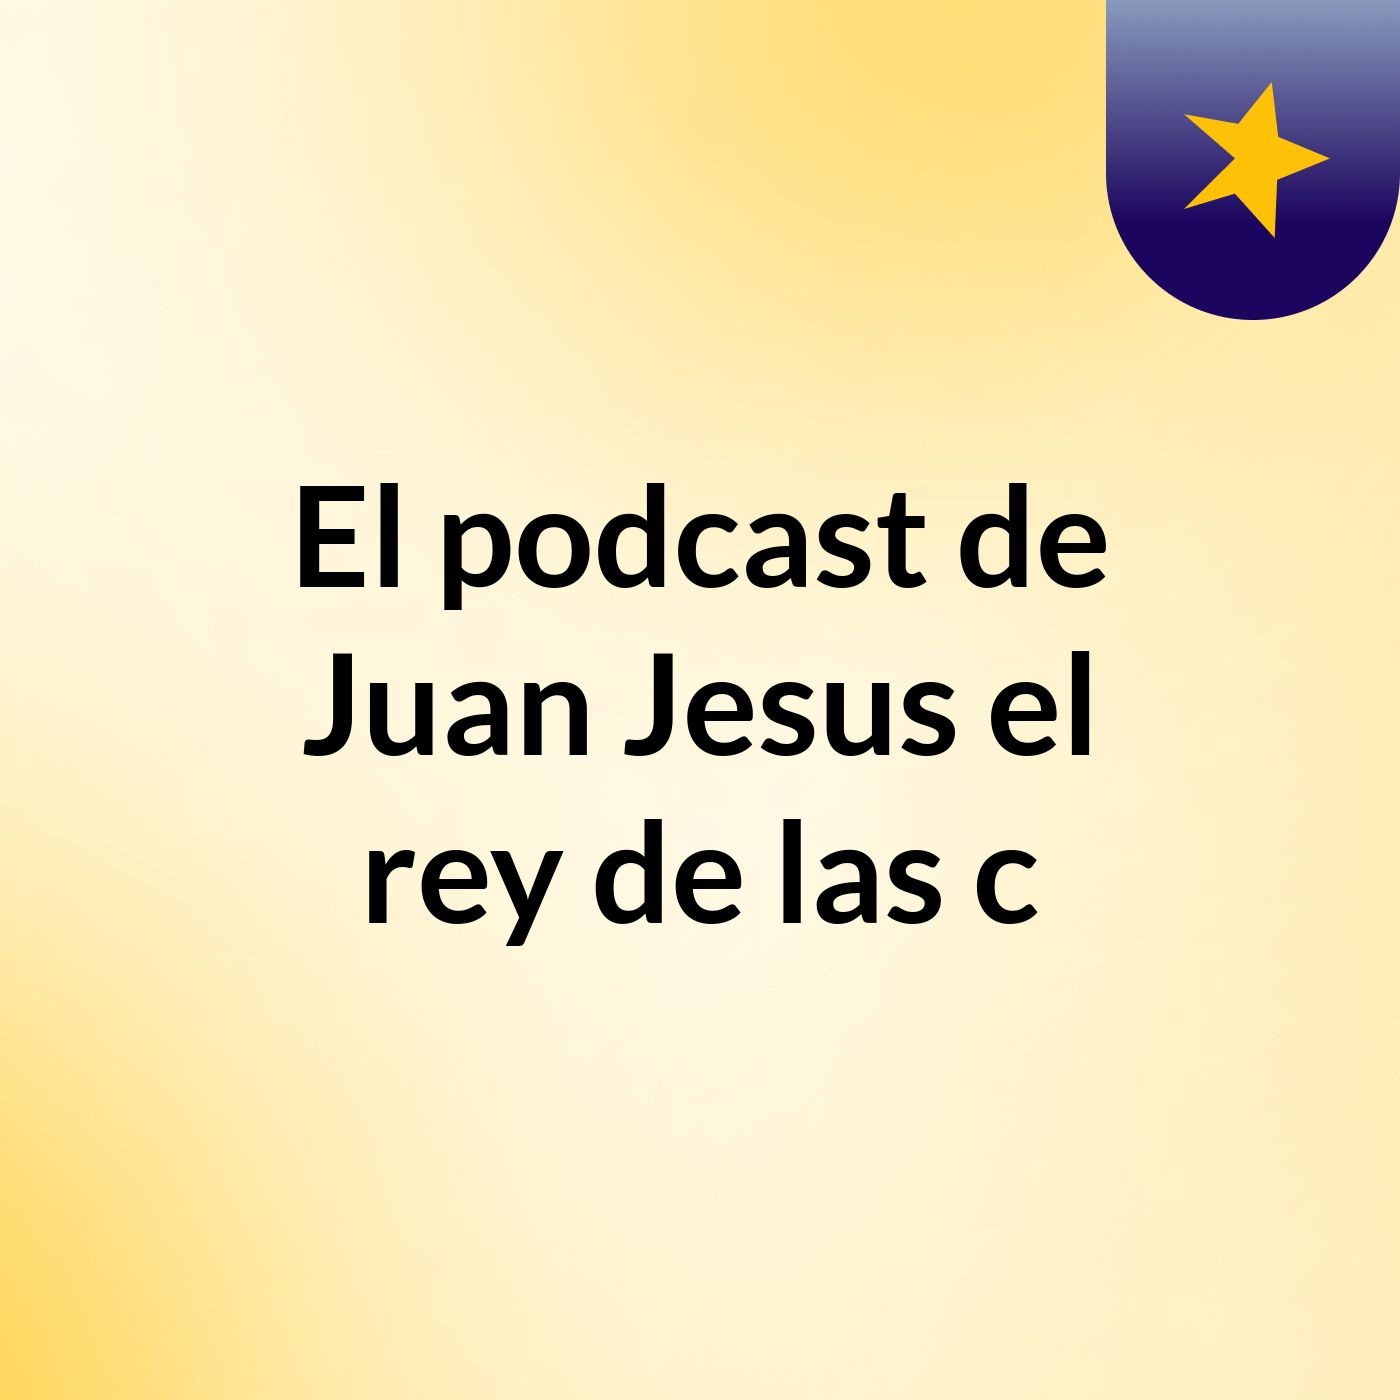 El podcast de Juan Jesus el rey de las c